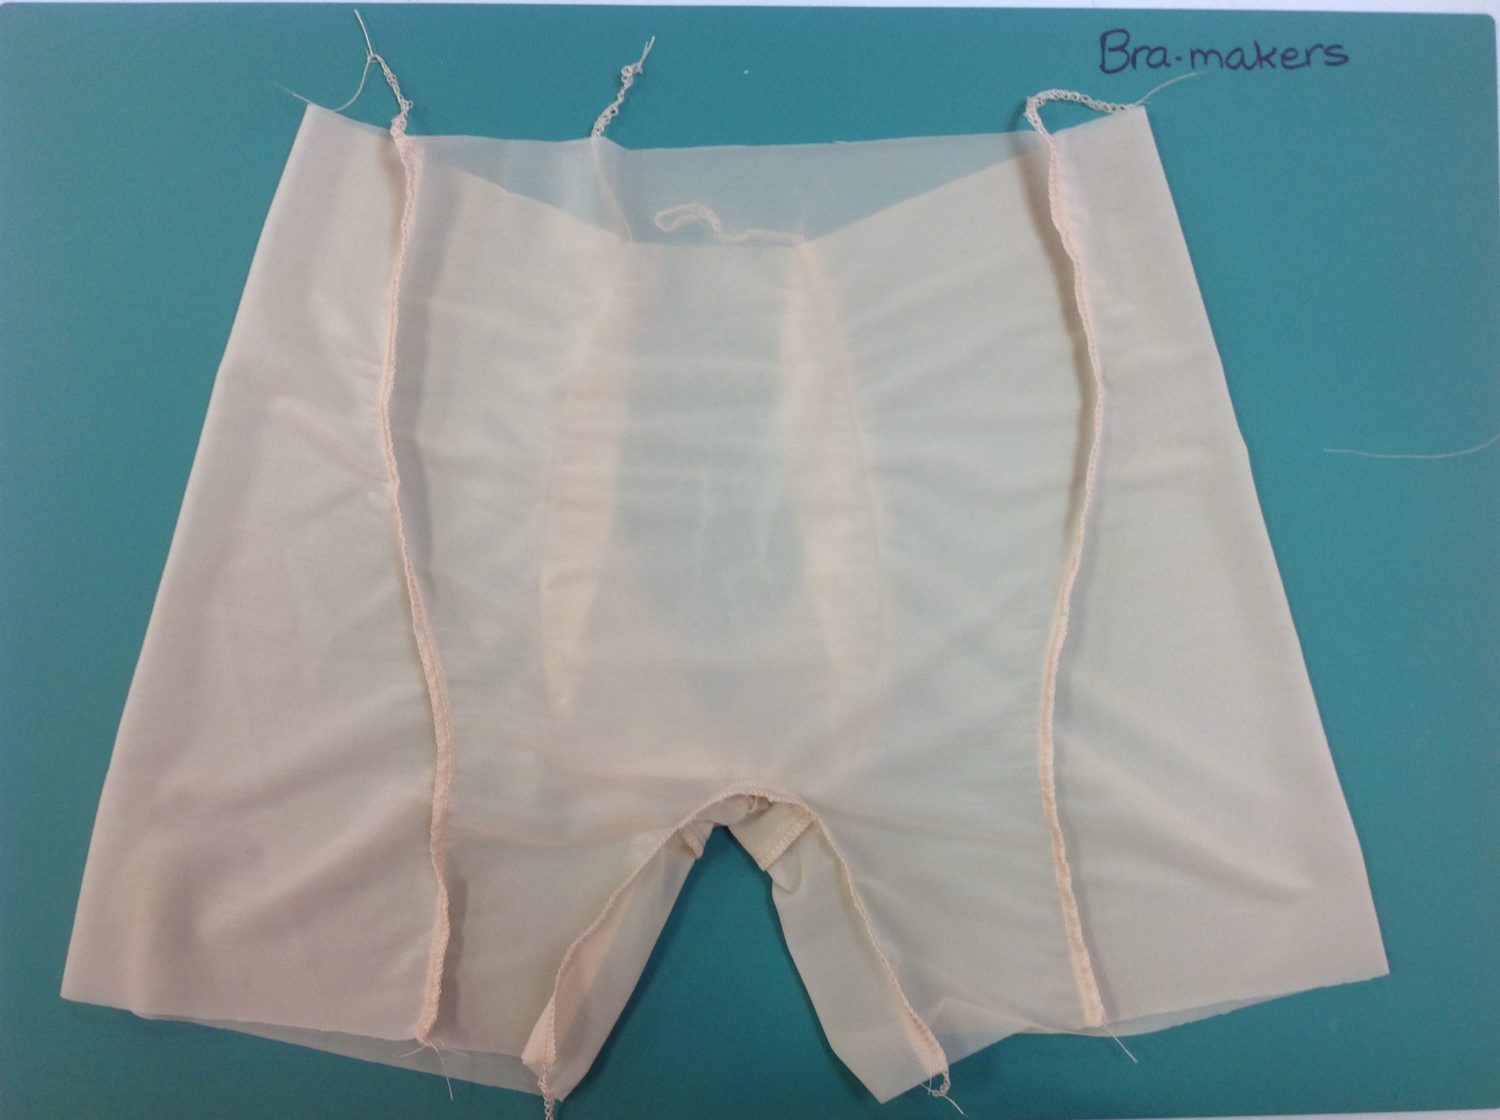 Inside Men's Underwear - Bra-makers Supply the best bra-making supplies